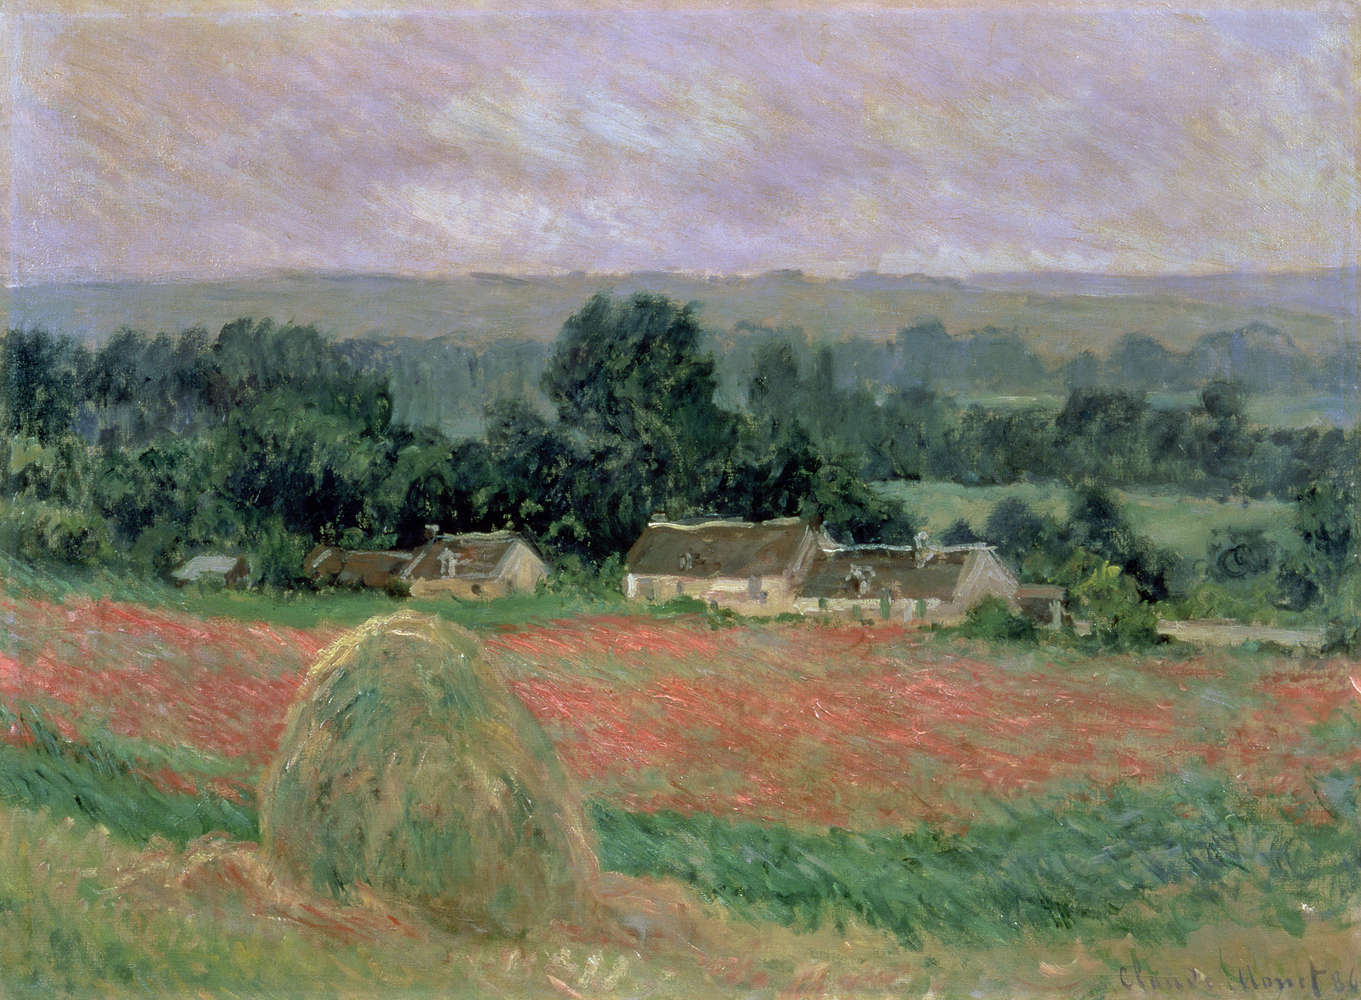             Papier peint panoramique "Botte de foin à Giverny" de Claude Monet
        